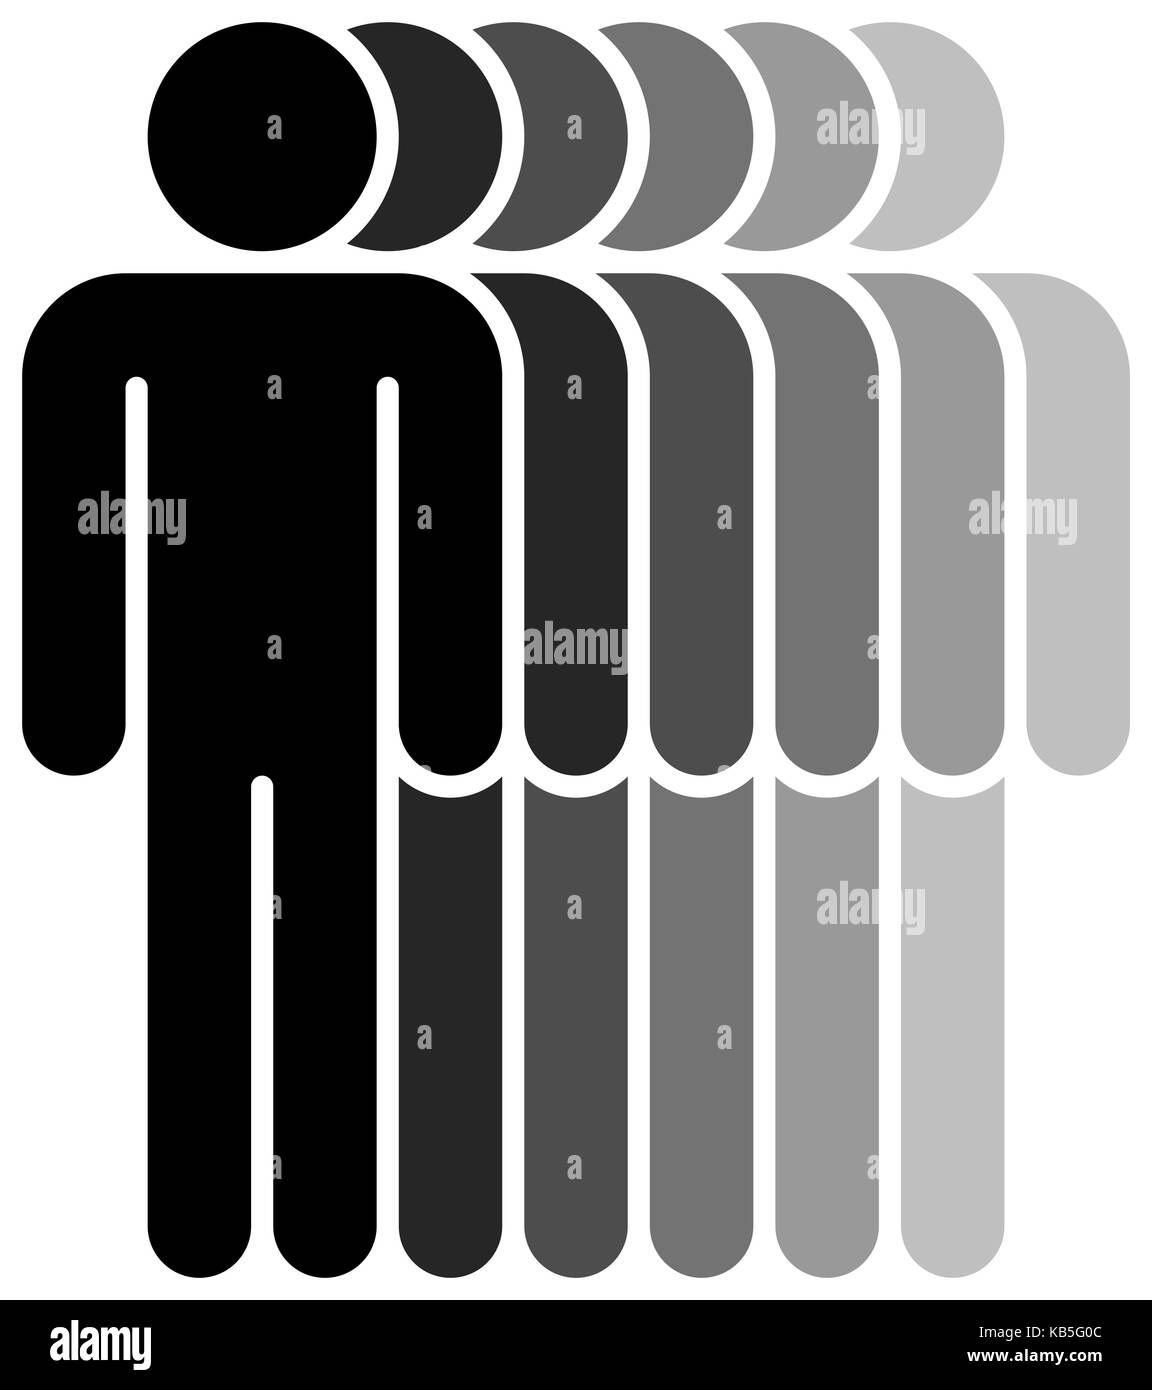 Logo sous la forme de six personnes debout avec les mains en bas peinte dans des tons de couleur noir. recherche rapide et facile de l'élément graphique recolorable Illustration de Vecteur